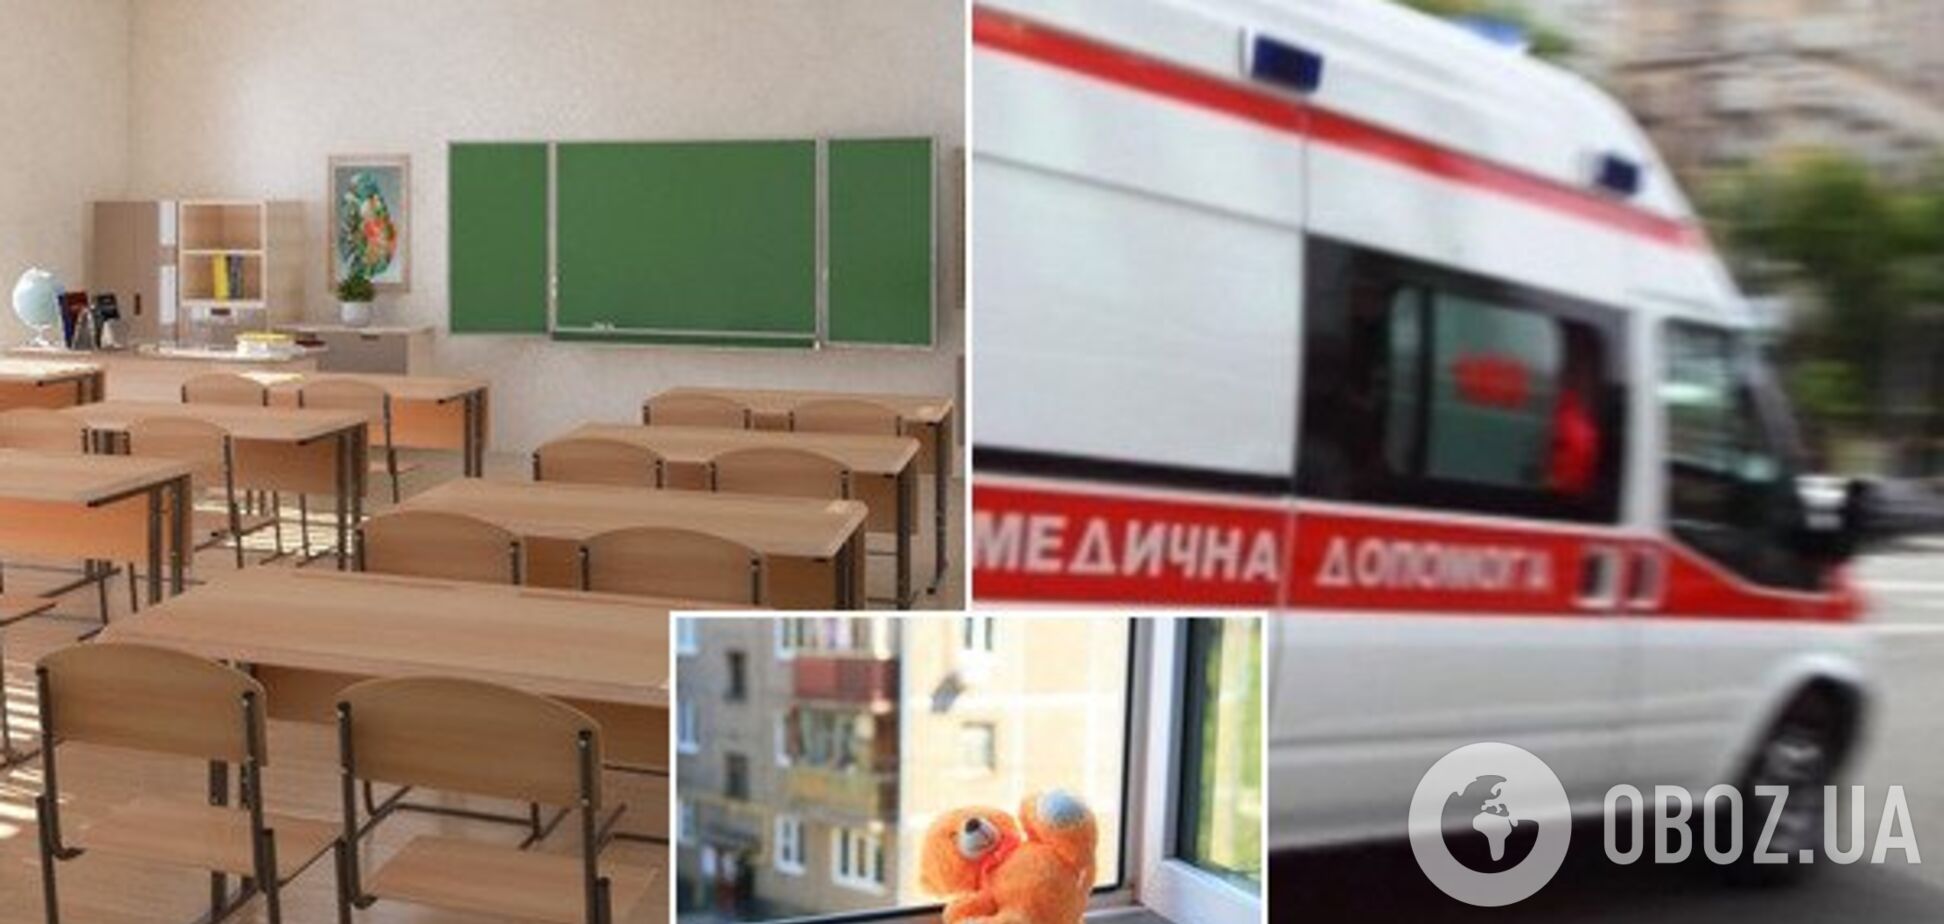 У Києві дівчинка вистрибнула з вікна школи. Ілюстрація